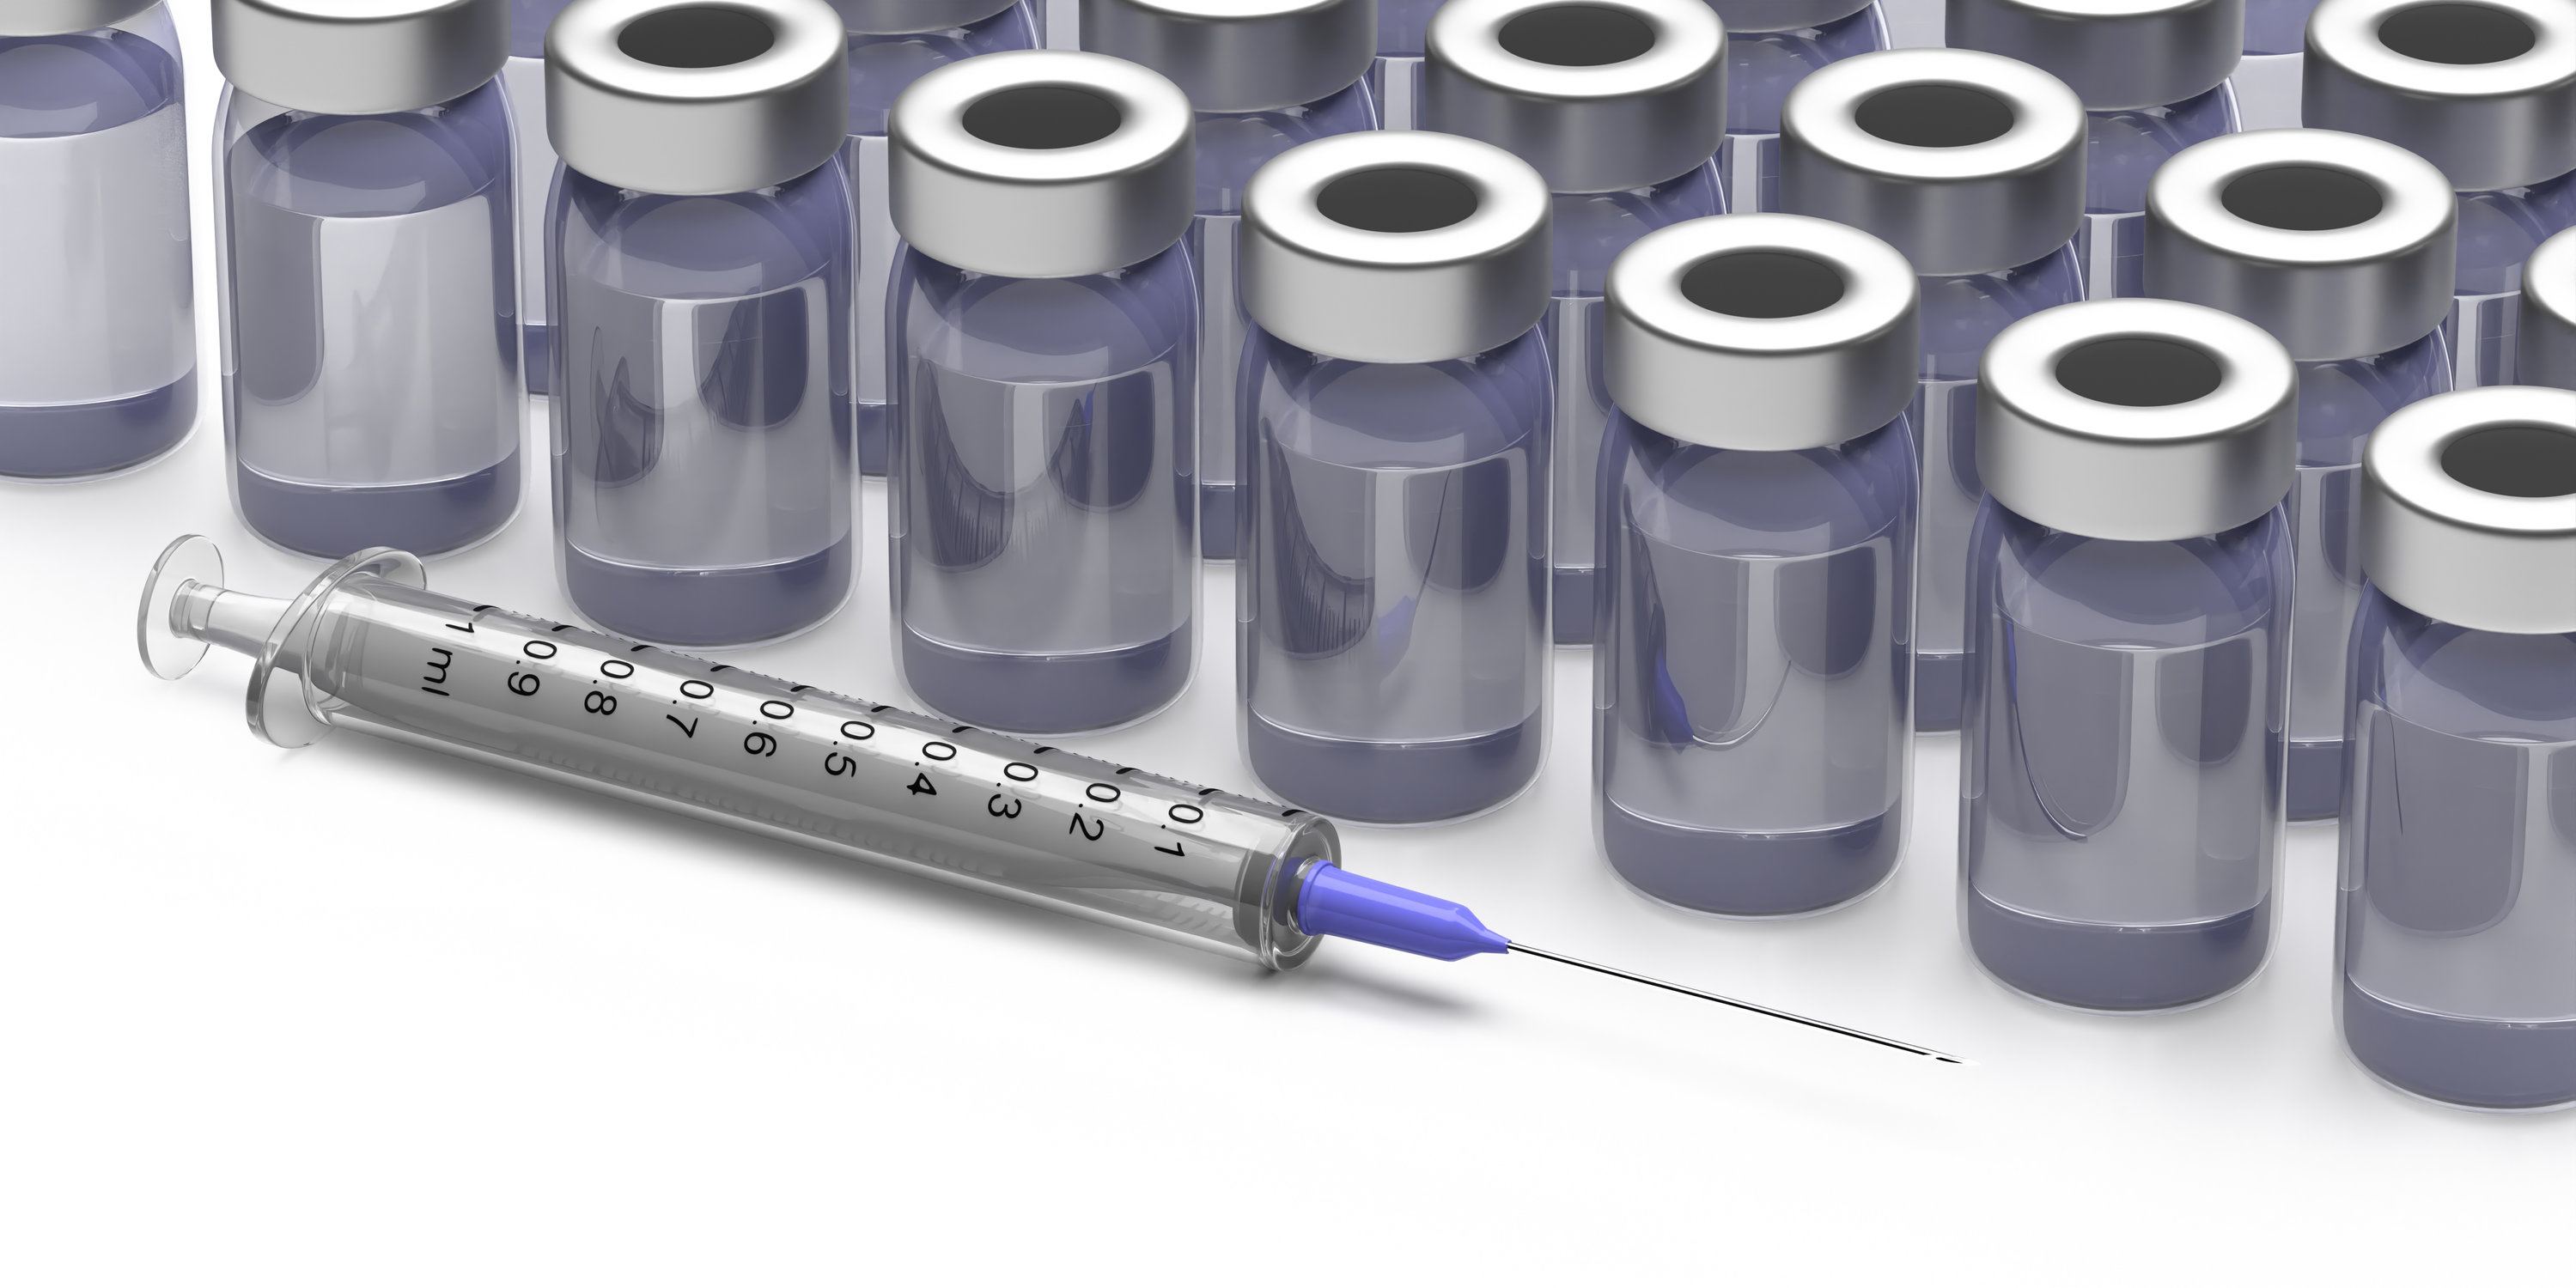 Covid-19: Dacă Sanofi găsește un vaccin, Statele Unite vor fi servite primele